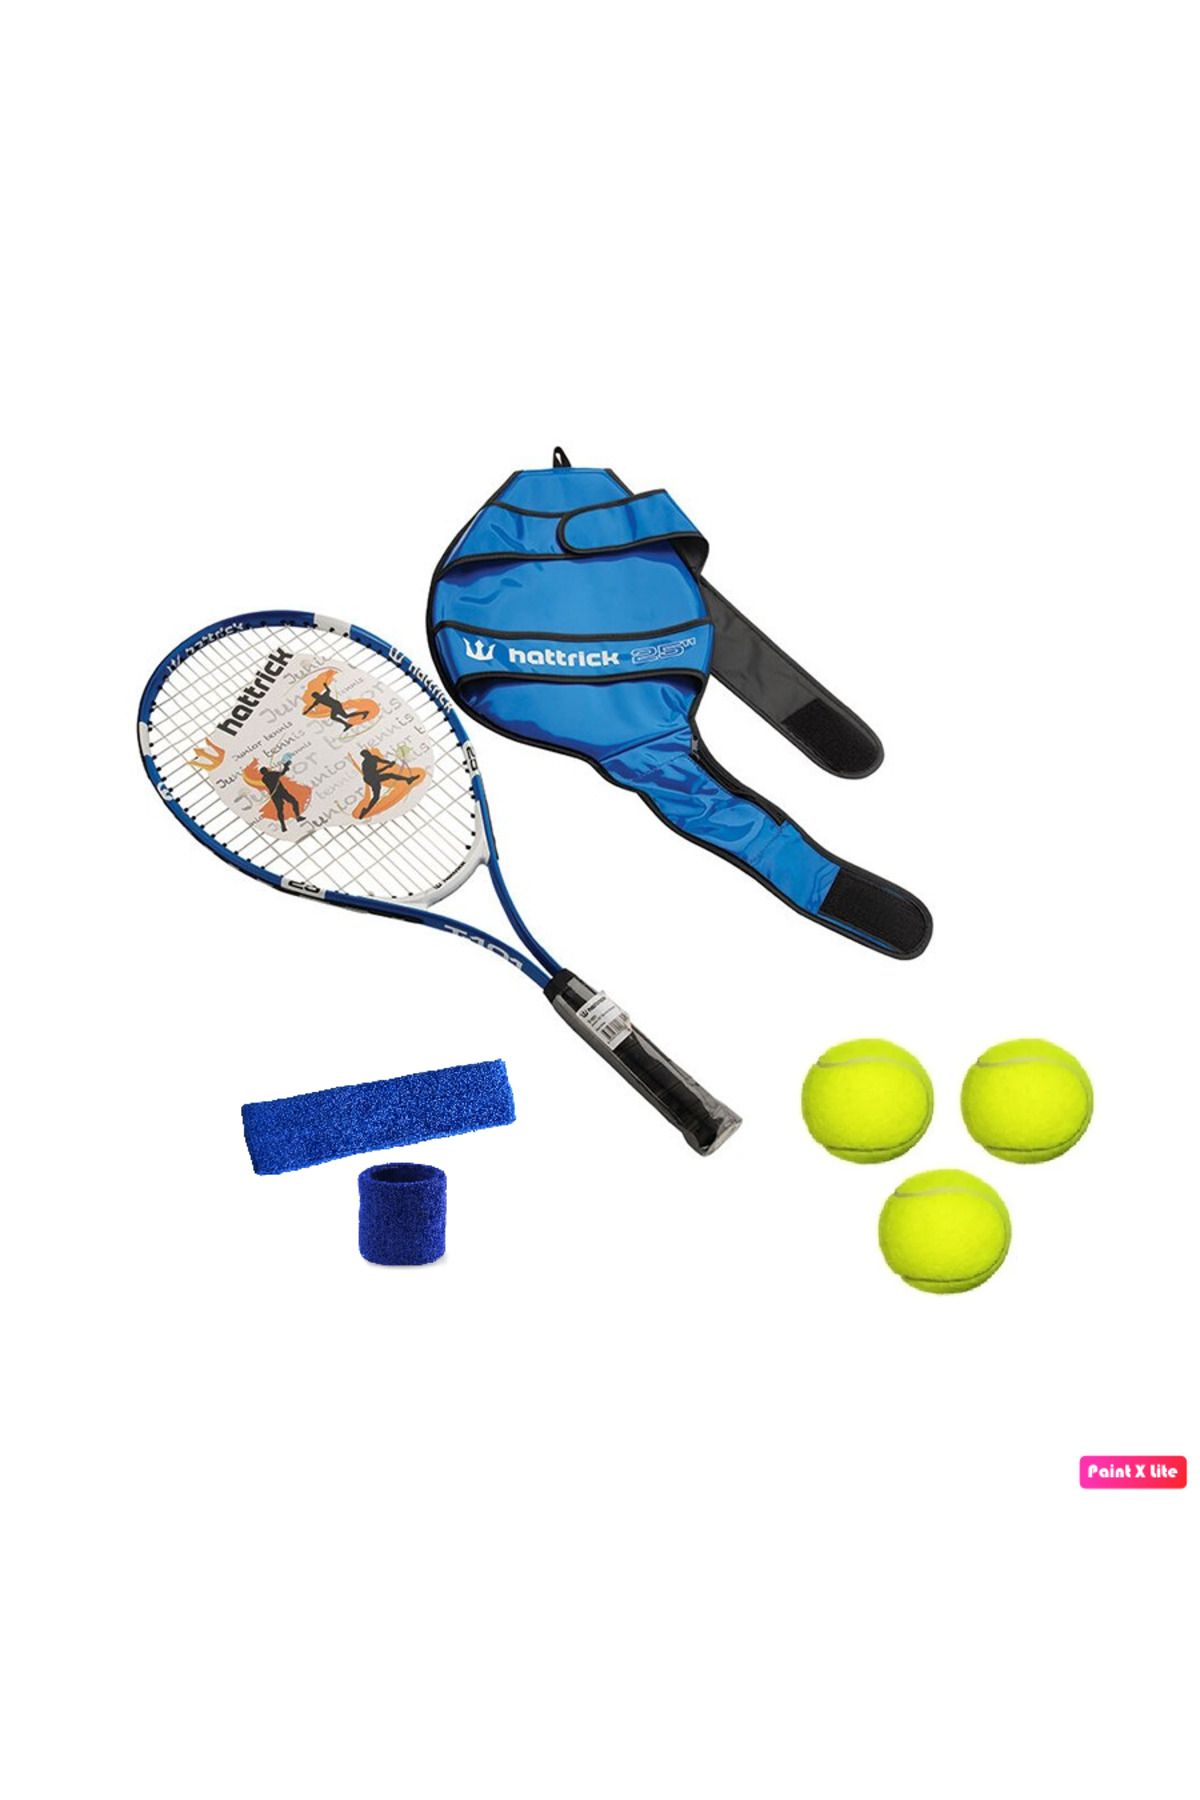 Hattrick T-101 25 inch 230 gr Çocuk Tenisçi Set Tenis Raketi + 3 Adet Tenis Topu + Havlu Kafa Bandı, Bileklik